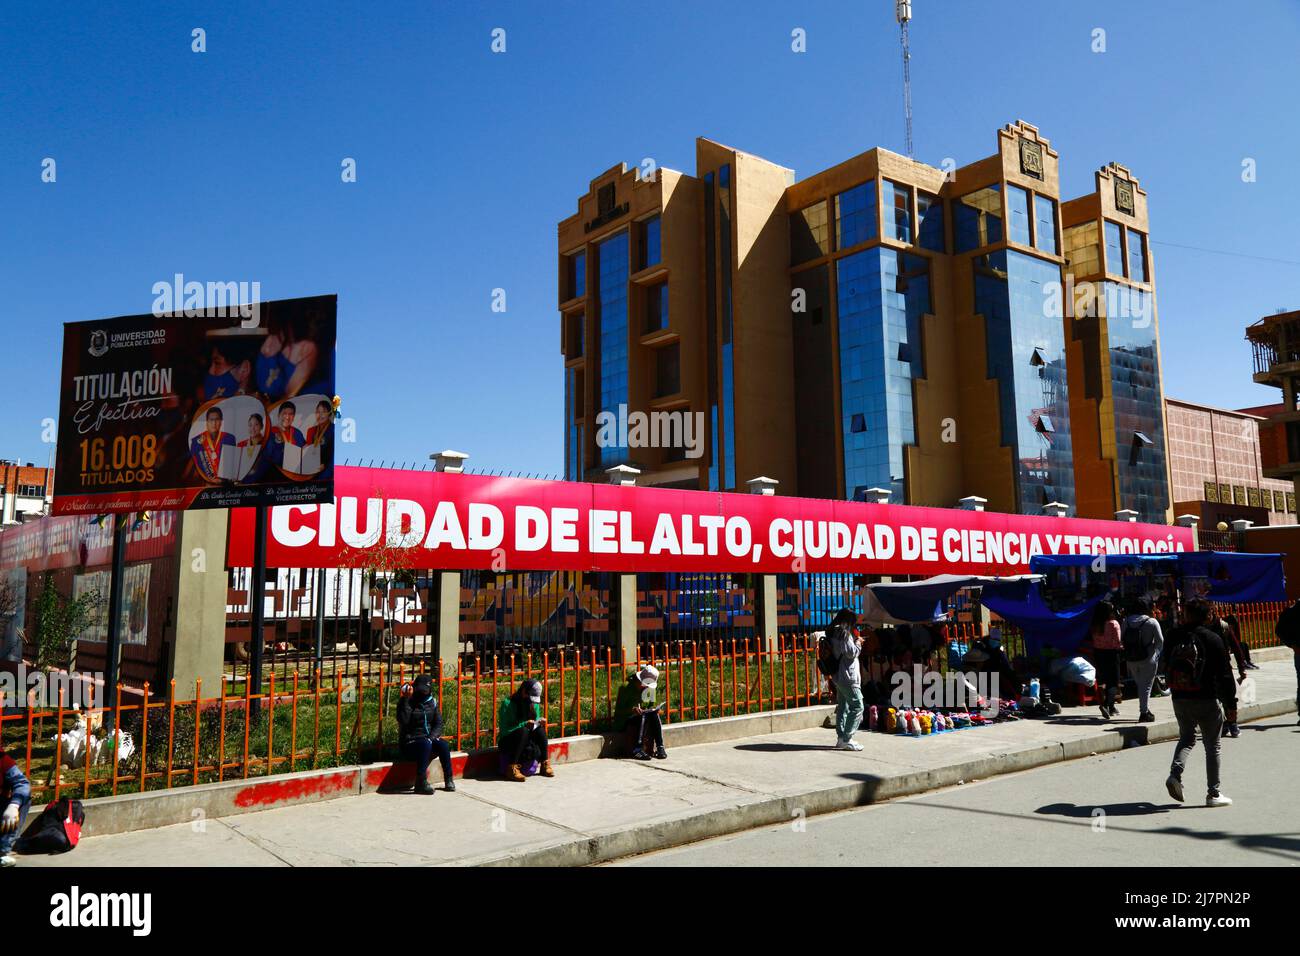 "Città di El Alto, città della scienza e della tecnologia" all'esterno dell'edificio principale dell'università UPEA (Universidad Pública de El Alto), El Alto, Bolivia Foto Stock